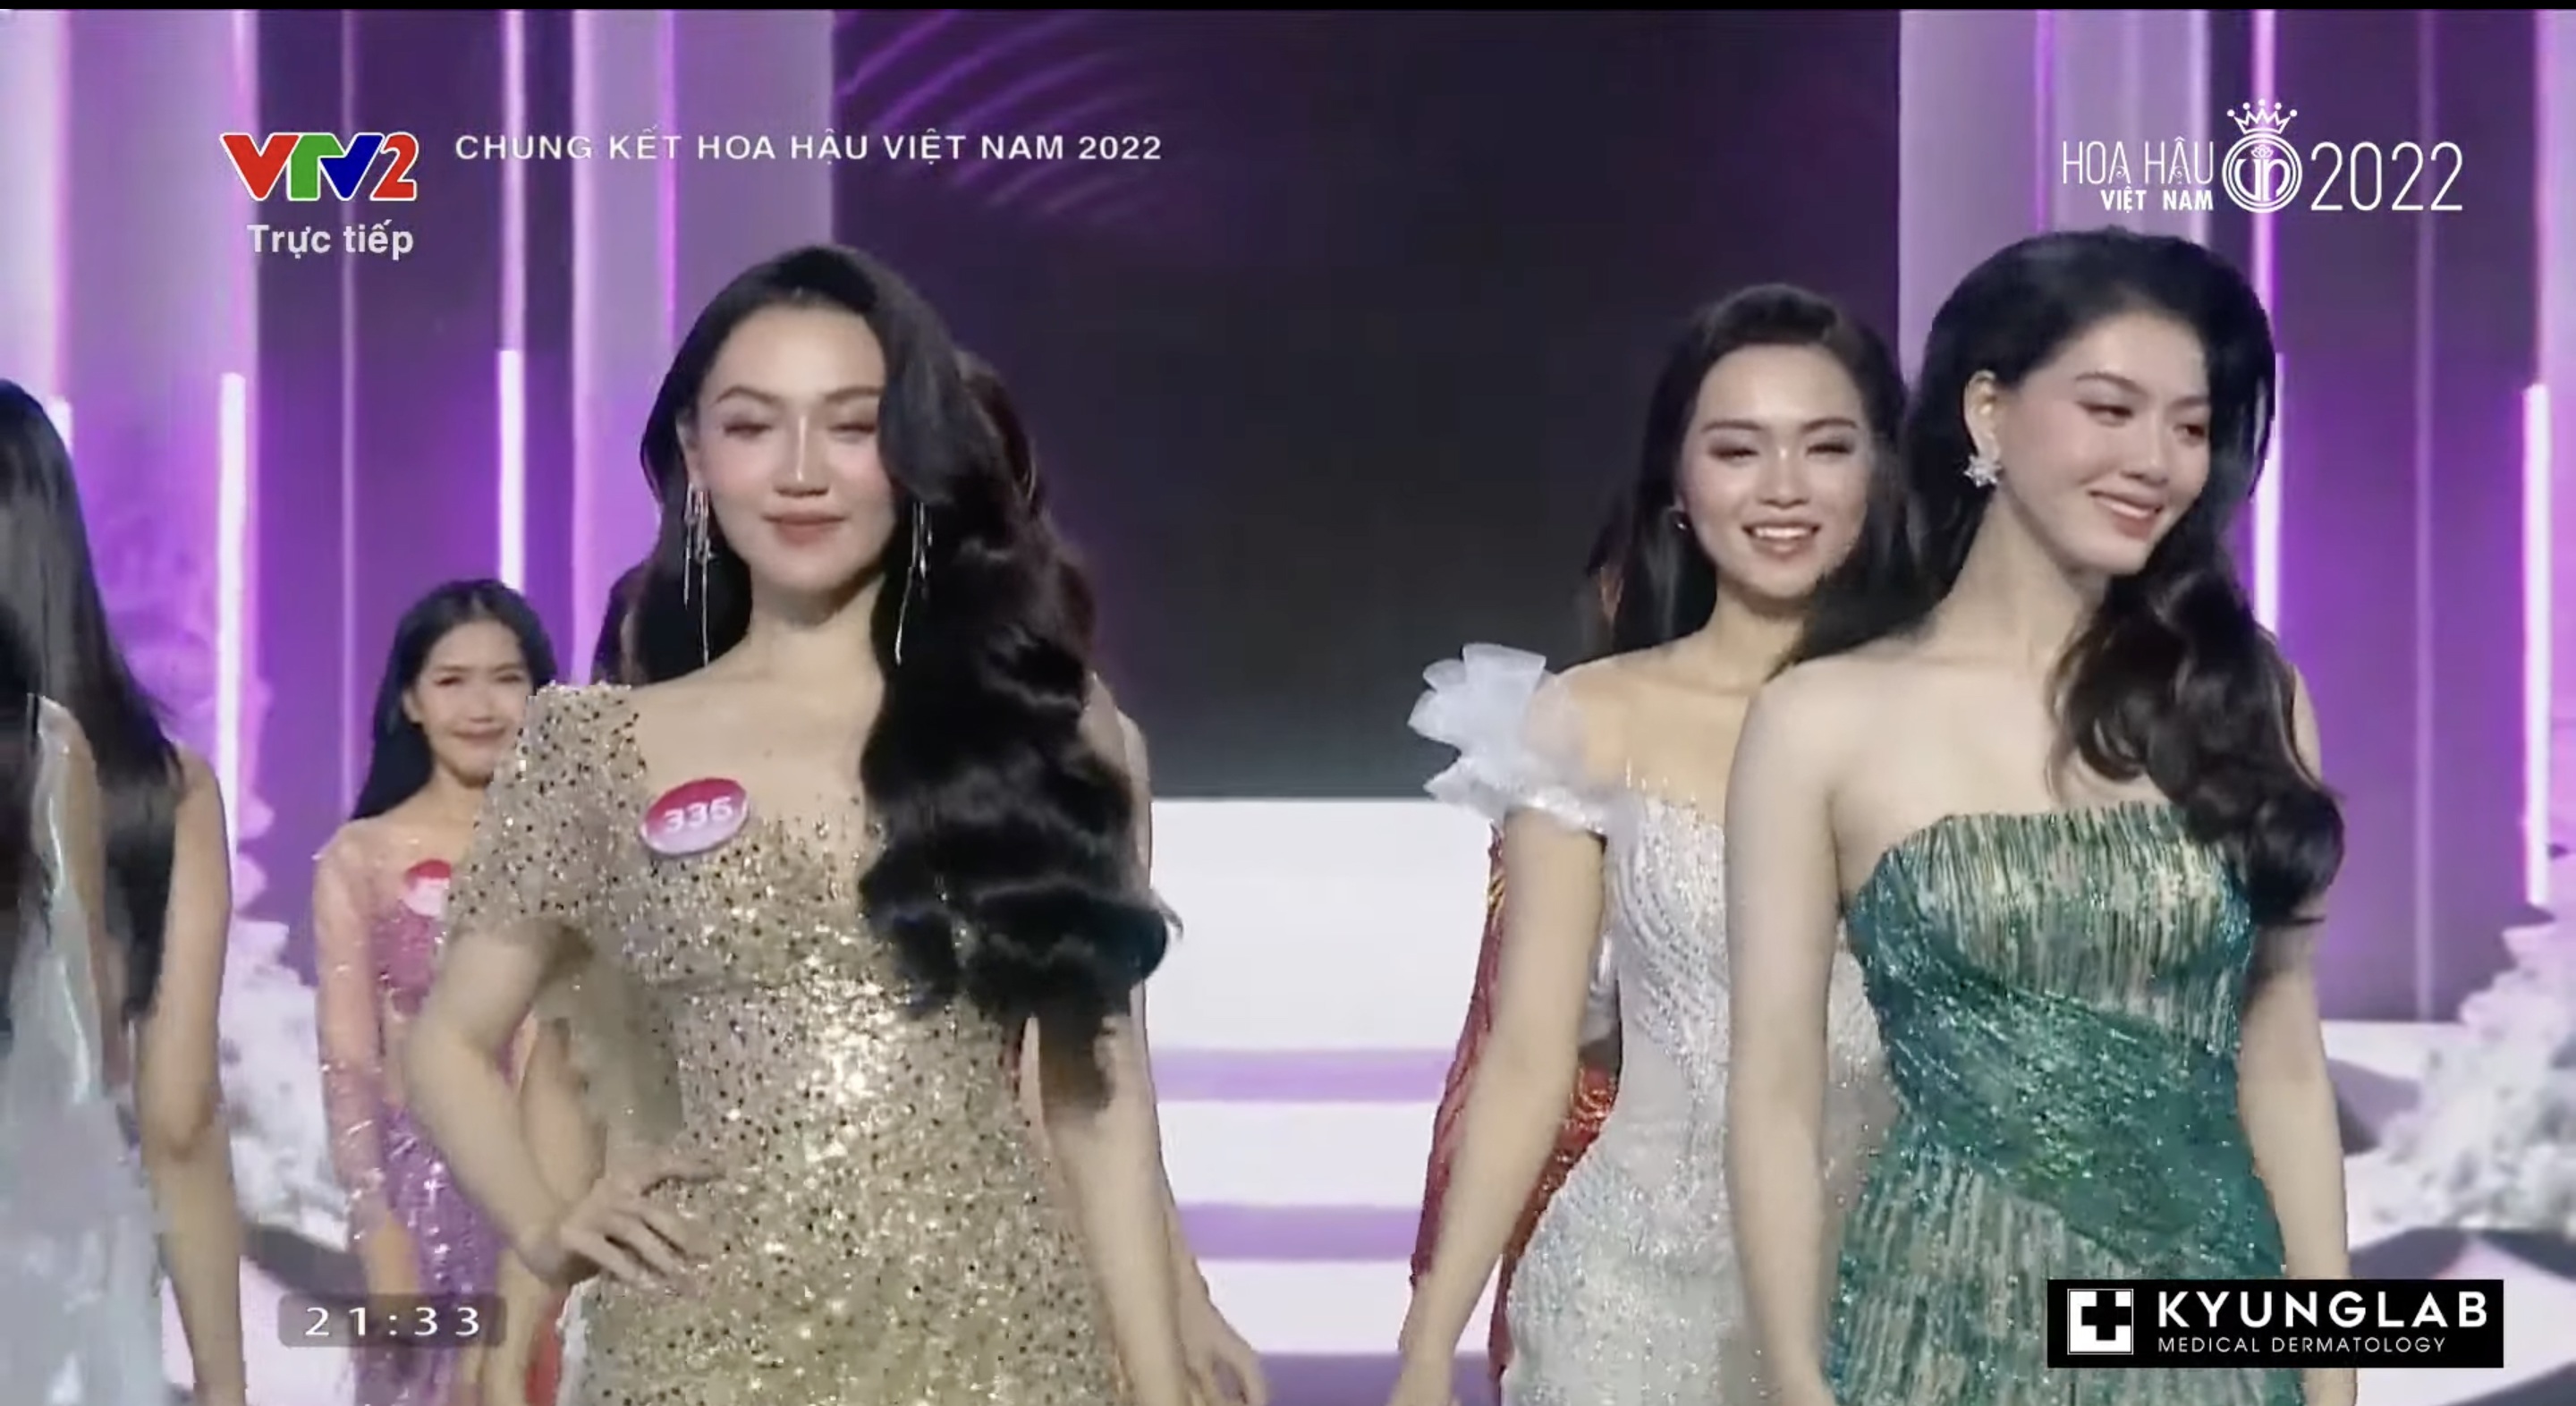 Chung kết Hoa hậu Việt Nam 2022: Tân Hoa hậu chính thức gọi tên Huỳnh Thị Thanh Thuỷ - 23